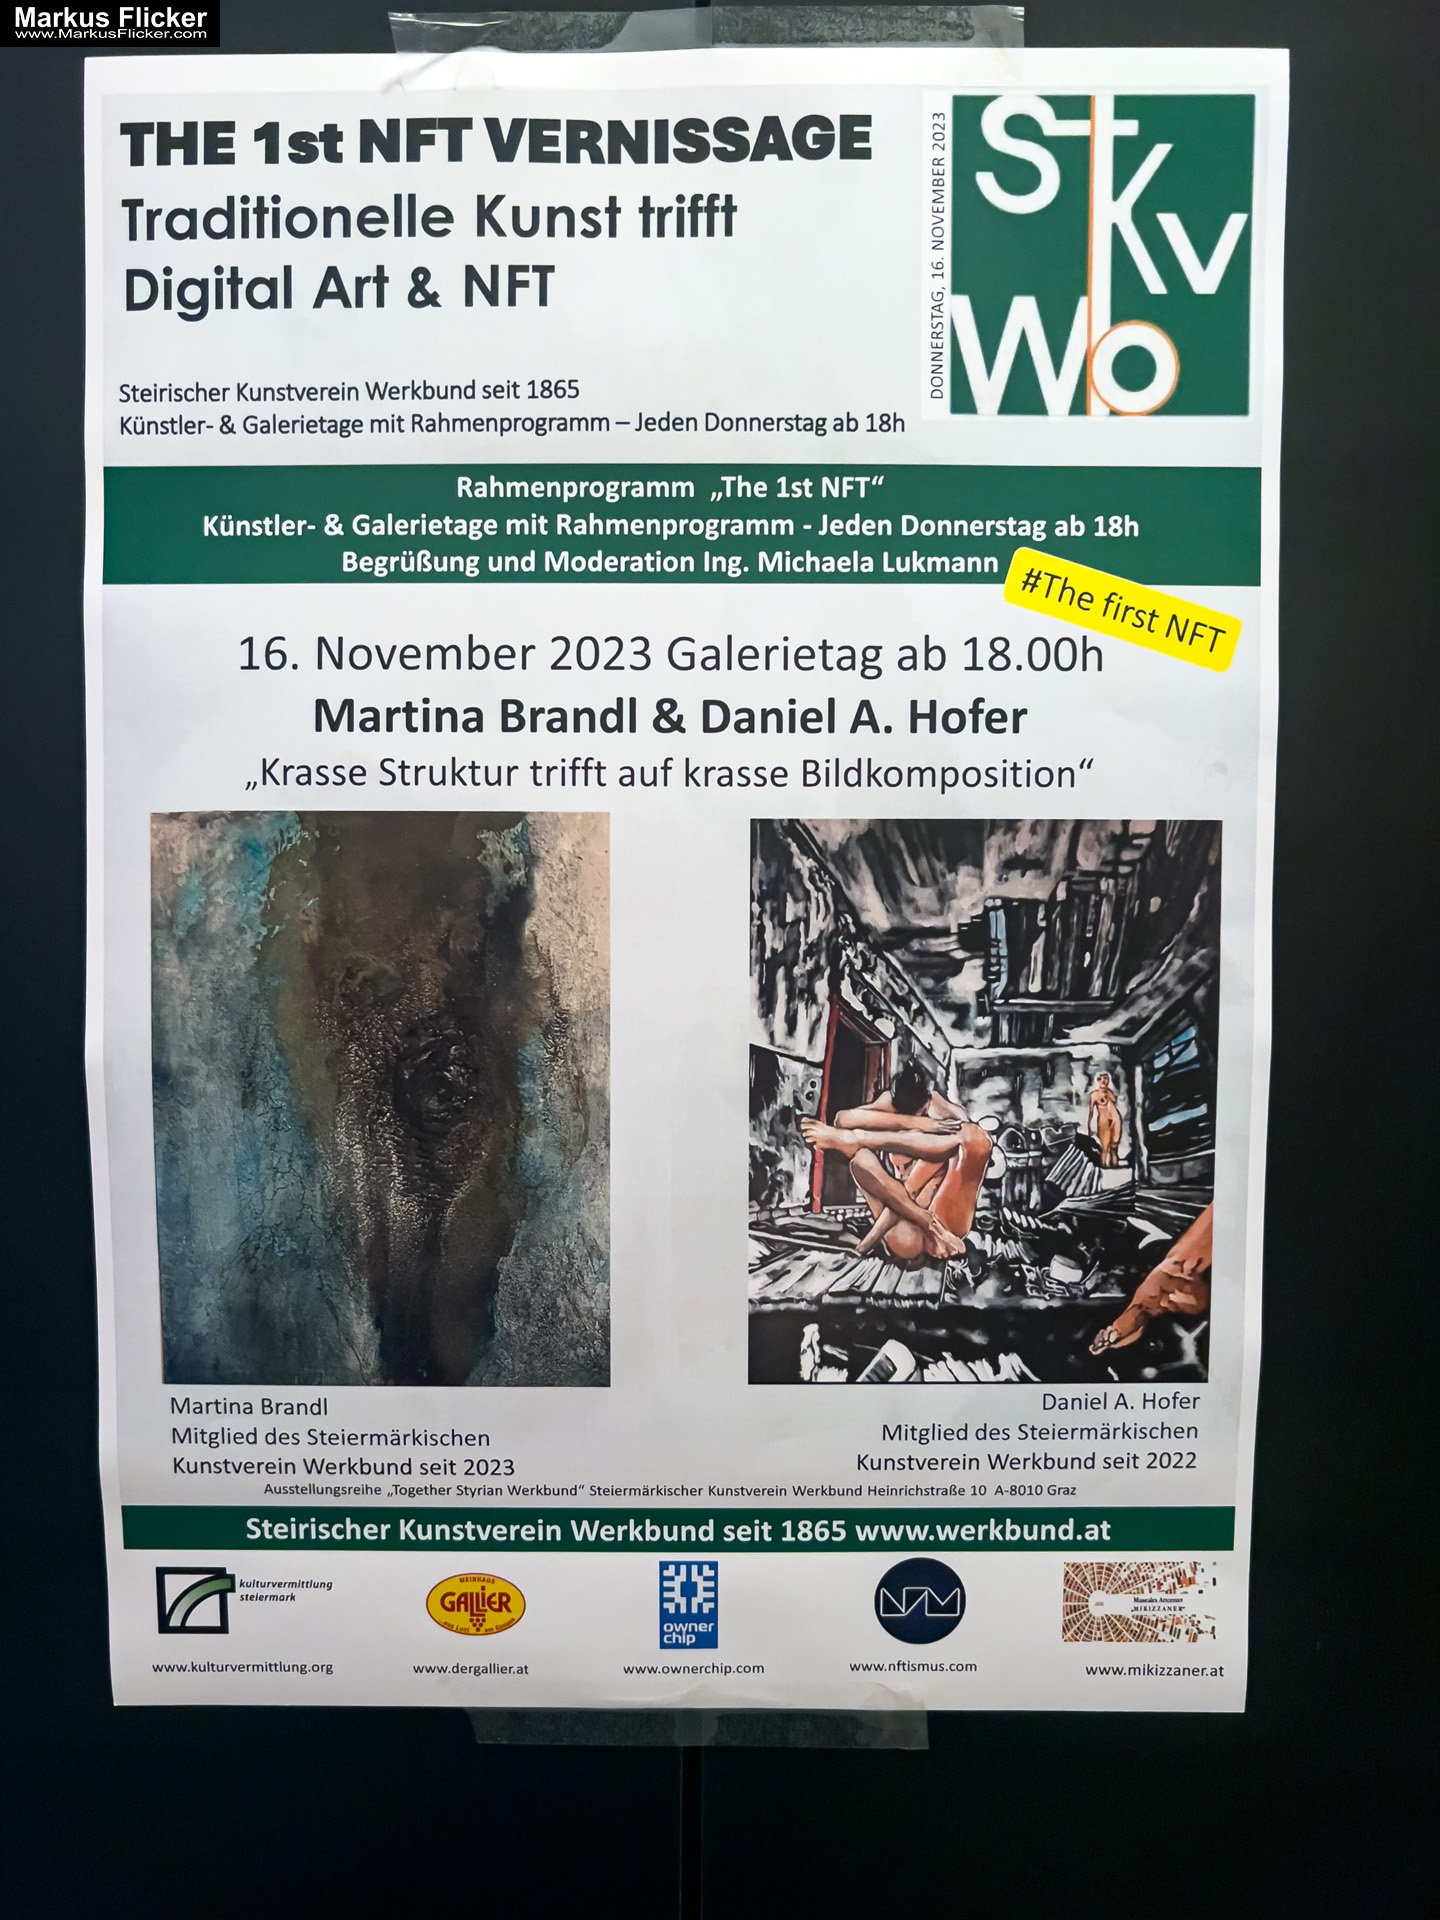 THE 1st NFT VERNISSAGE Traditionelle Kunst trifft Digital ART & NFT #thefirstnft Steiermärkischer Kunstverein Werkbund Graz Martina Brandl 